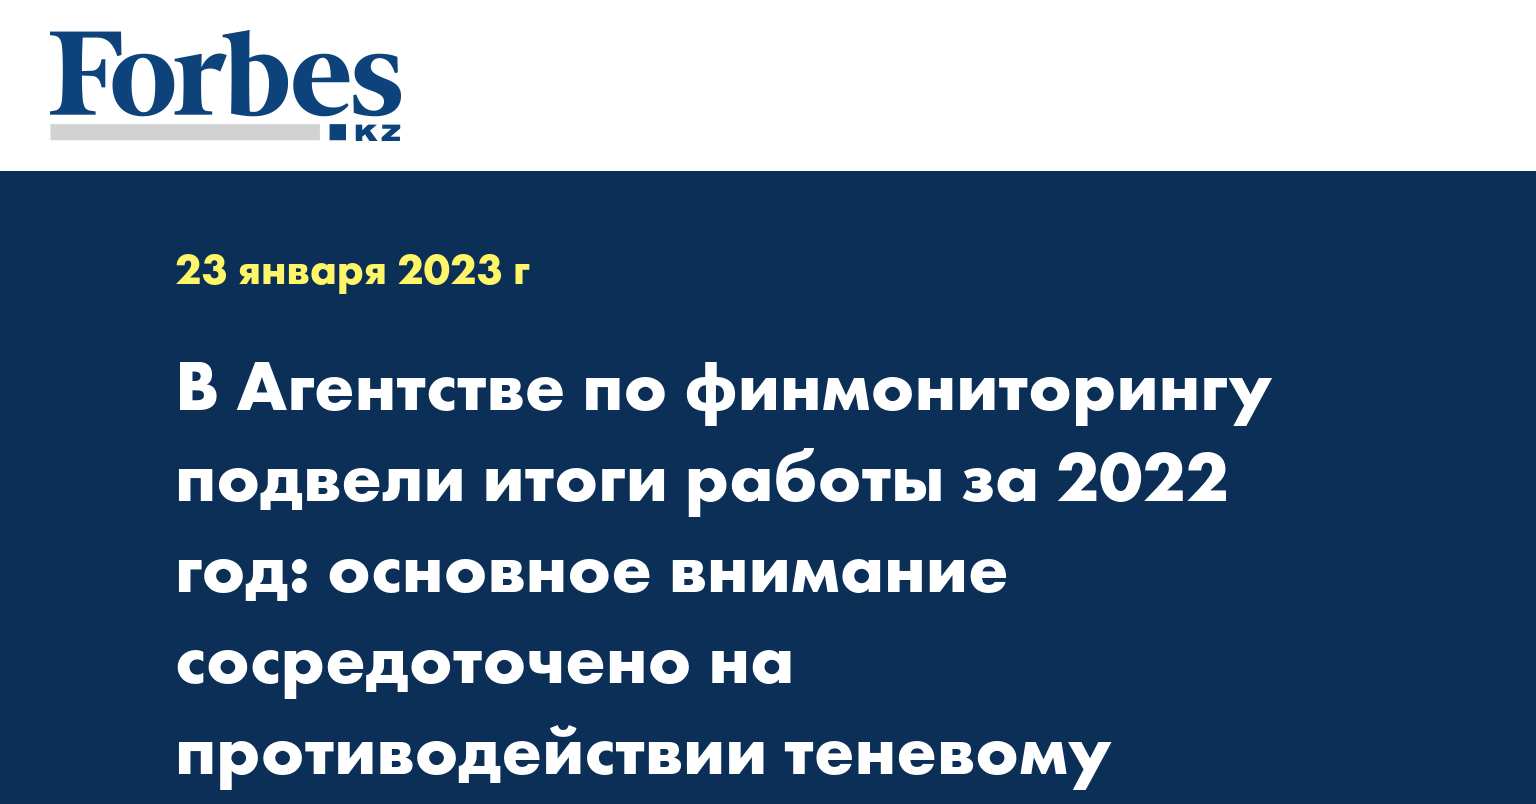 В Агентстве по финмониторингу подвели итоги работы за 2022 год: основное внимание сосредоточено на противодействии теневому бизнесу